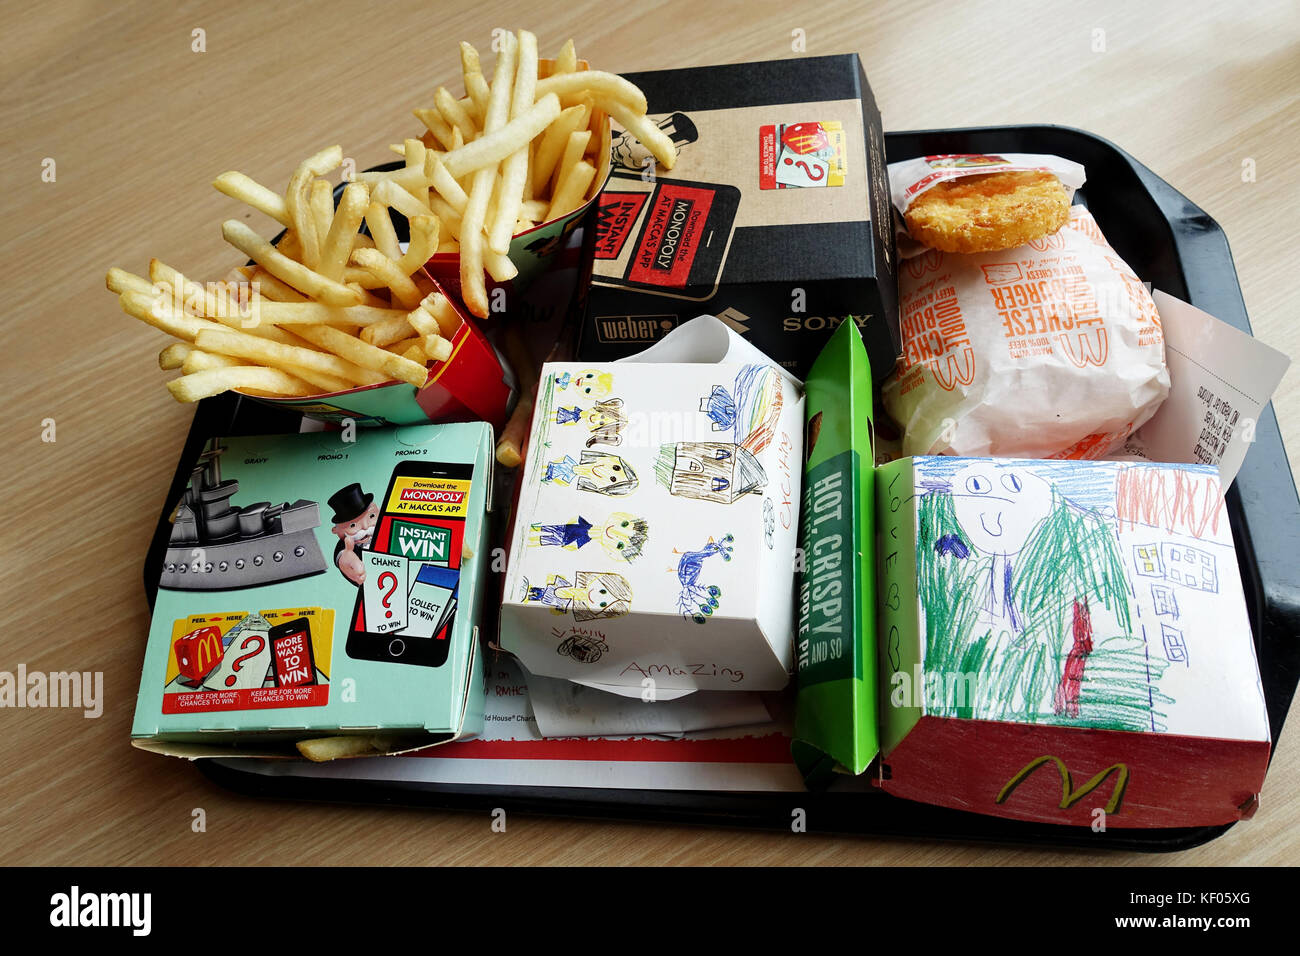 McDonald's Australie burger, frites et hash brown Banque D'Images